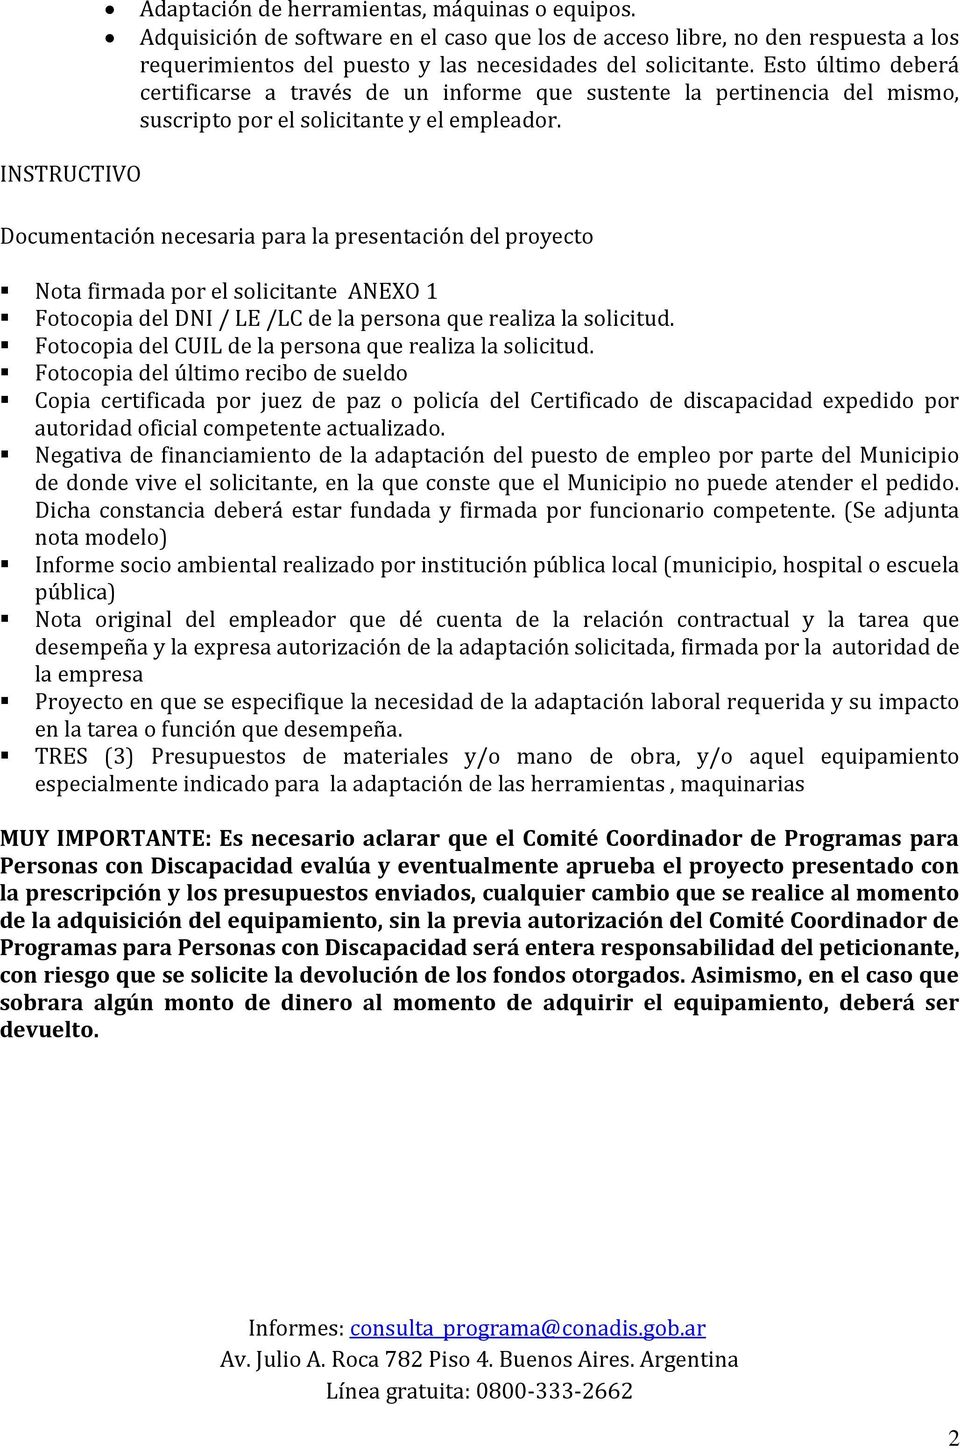 INSTRUCTIVO Documentación necesaria para la presentación del proyecto Nota firmada por el solicitante ANEXO 1 Fotocopia del DNI / LE /LC de la persona que realiza la solicitud.